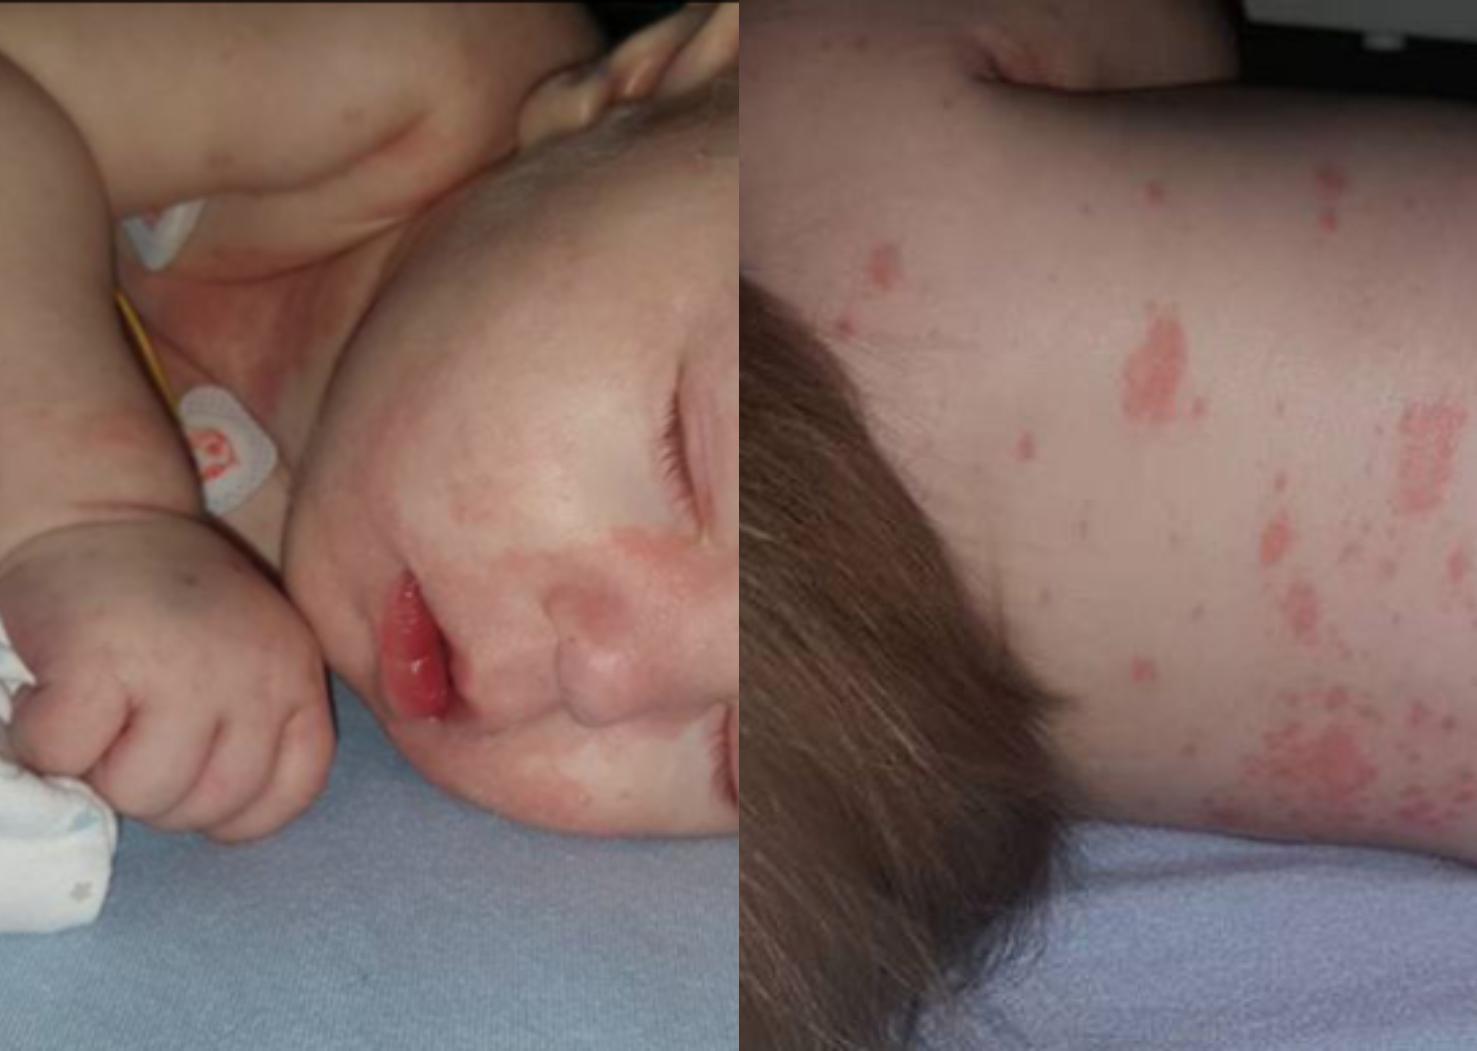 Μηνιγγίτιδα: Τα πιο επικίνδυνα συμπτώματα–Ποιοι πρέπει να εμβολιαστούν άμεσα;